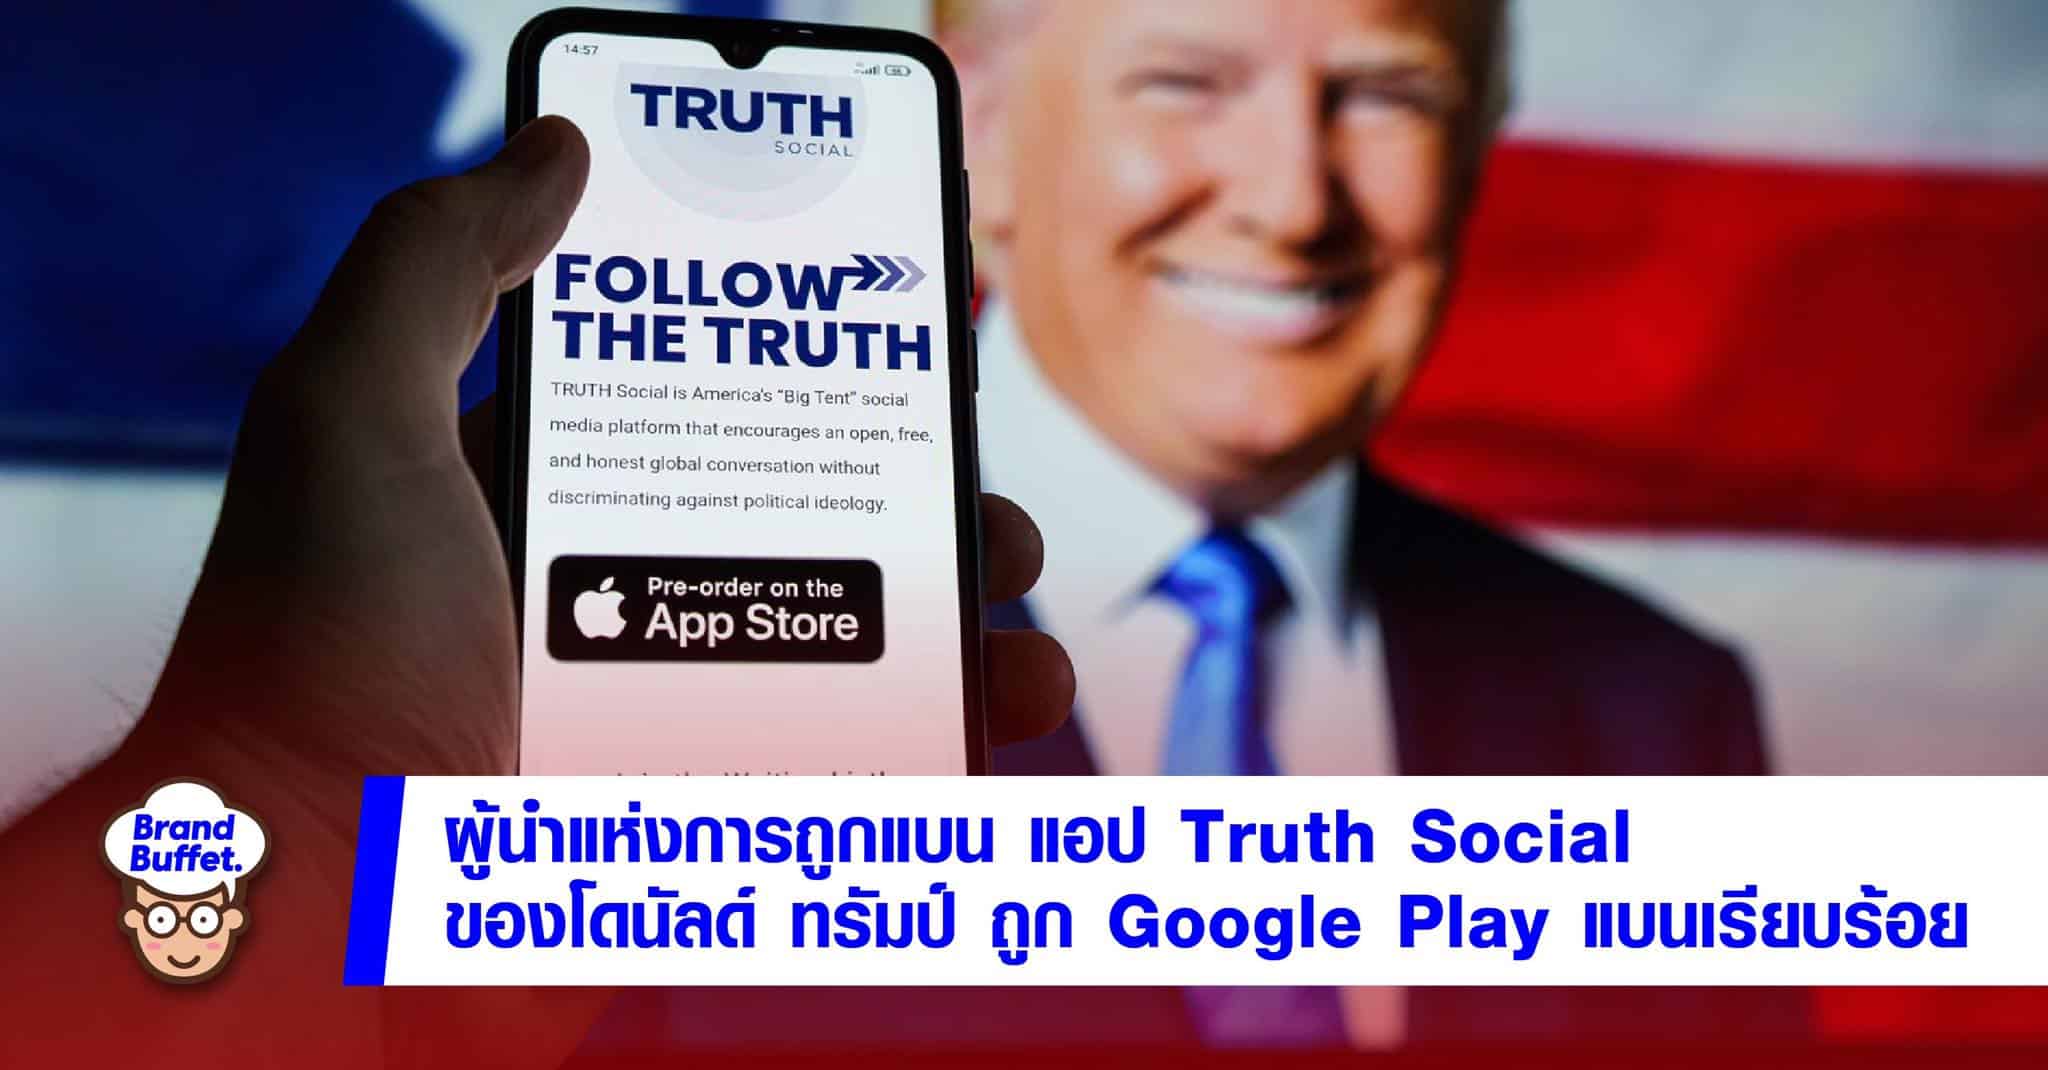 trump truth social